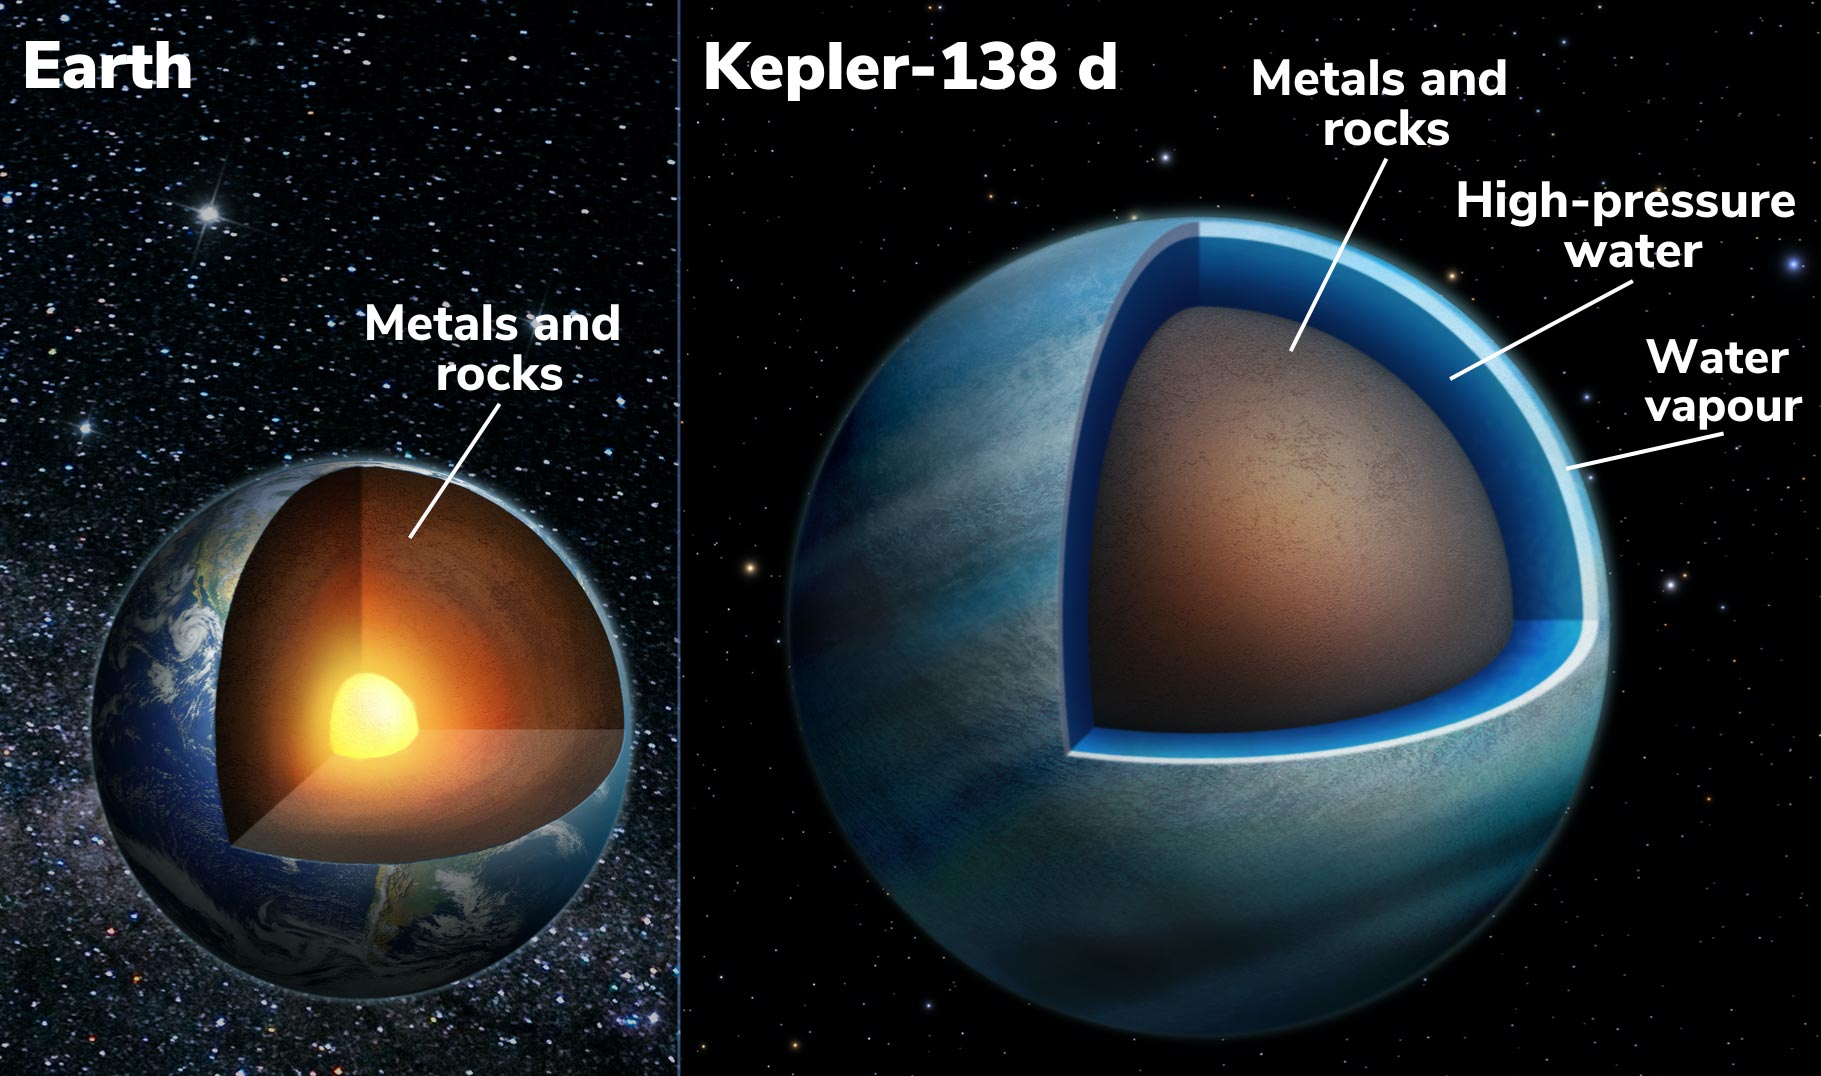 Kepler-42 b